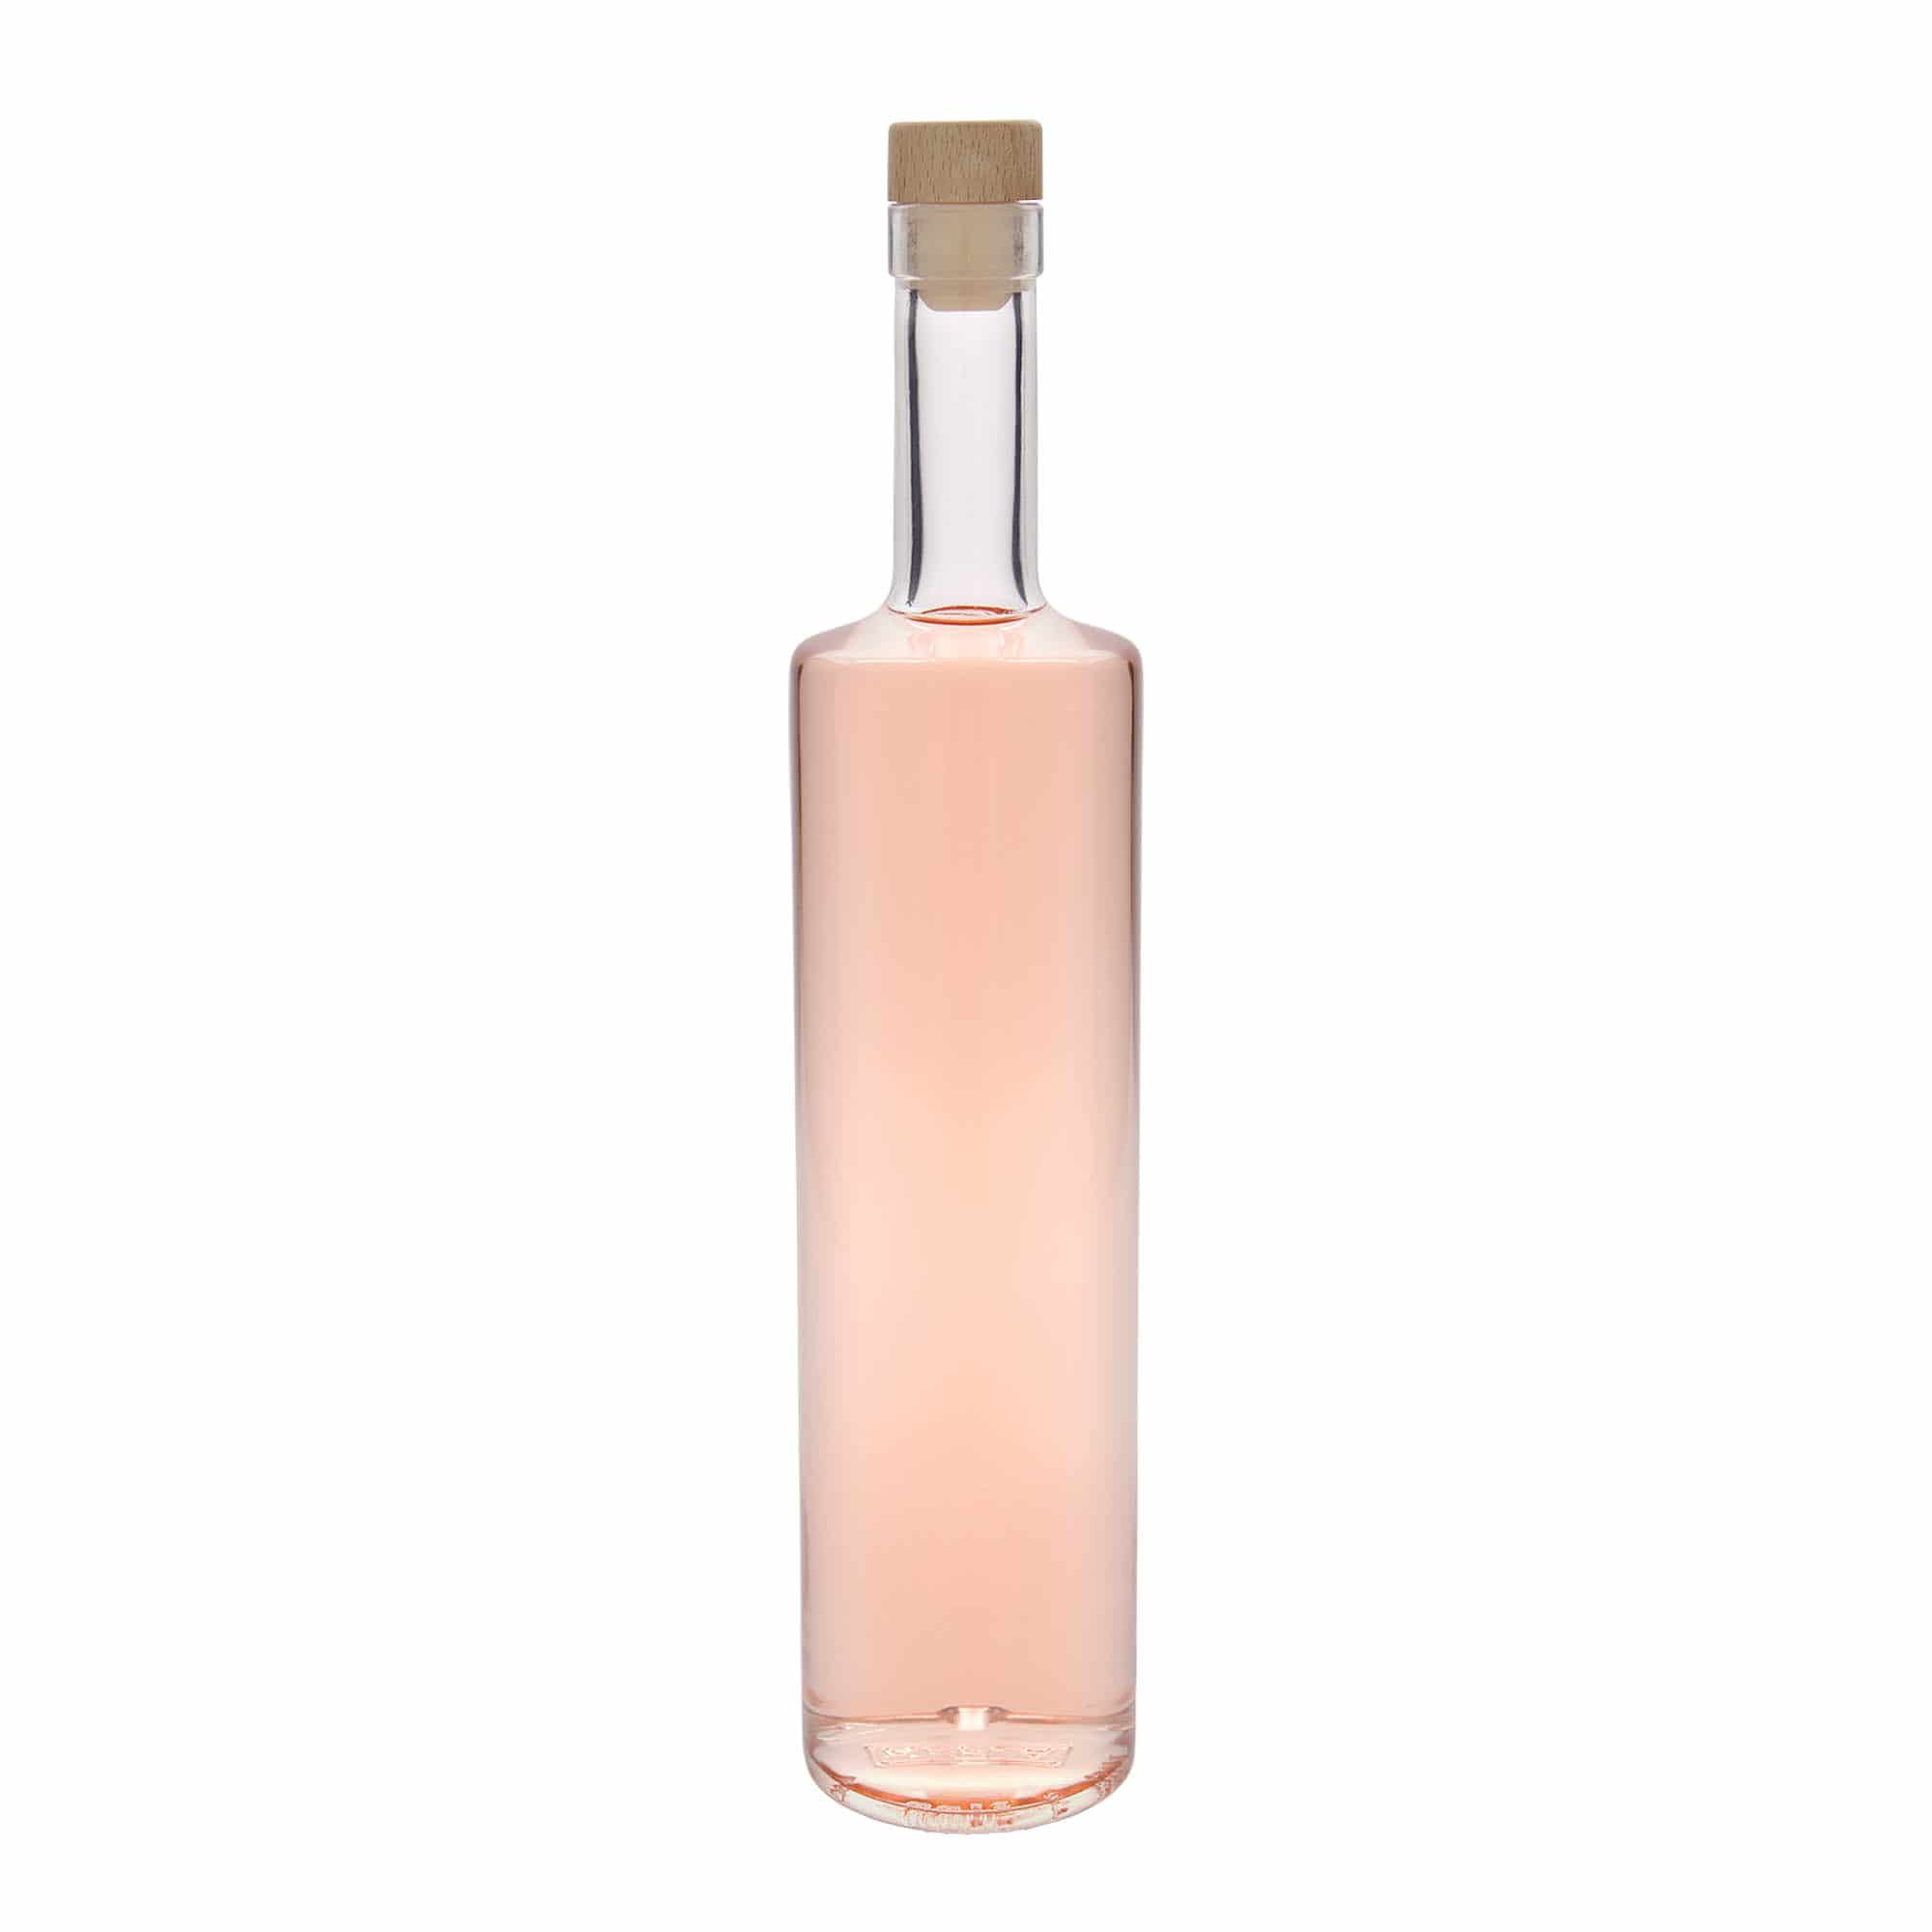 700 ml glass bottle 'Centurio', closure: cork